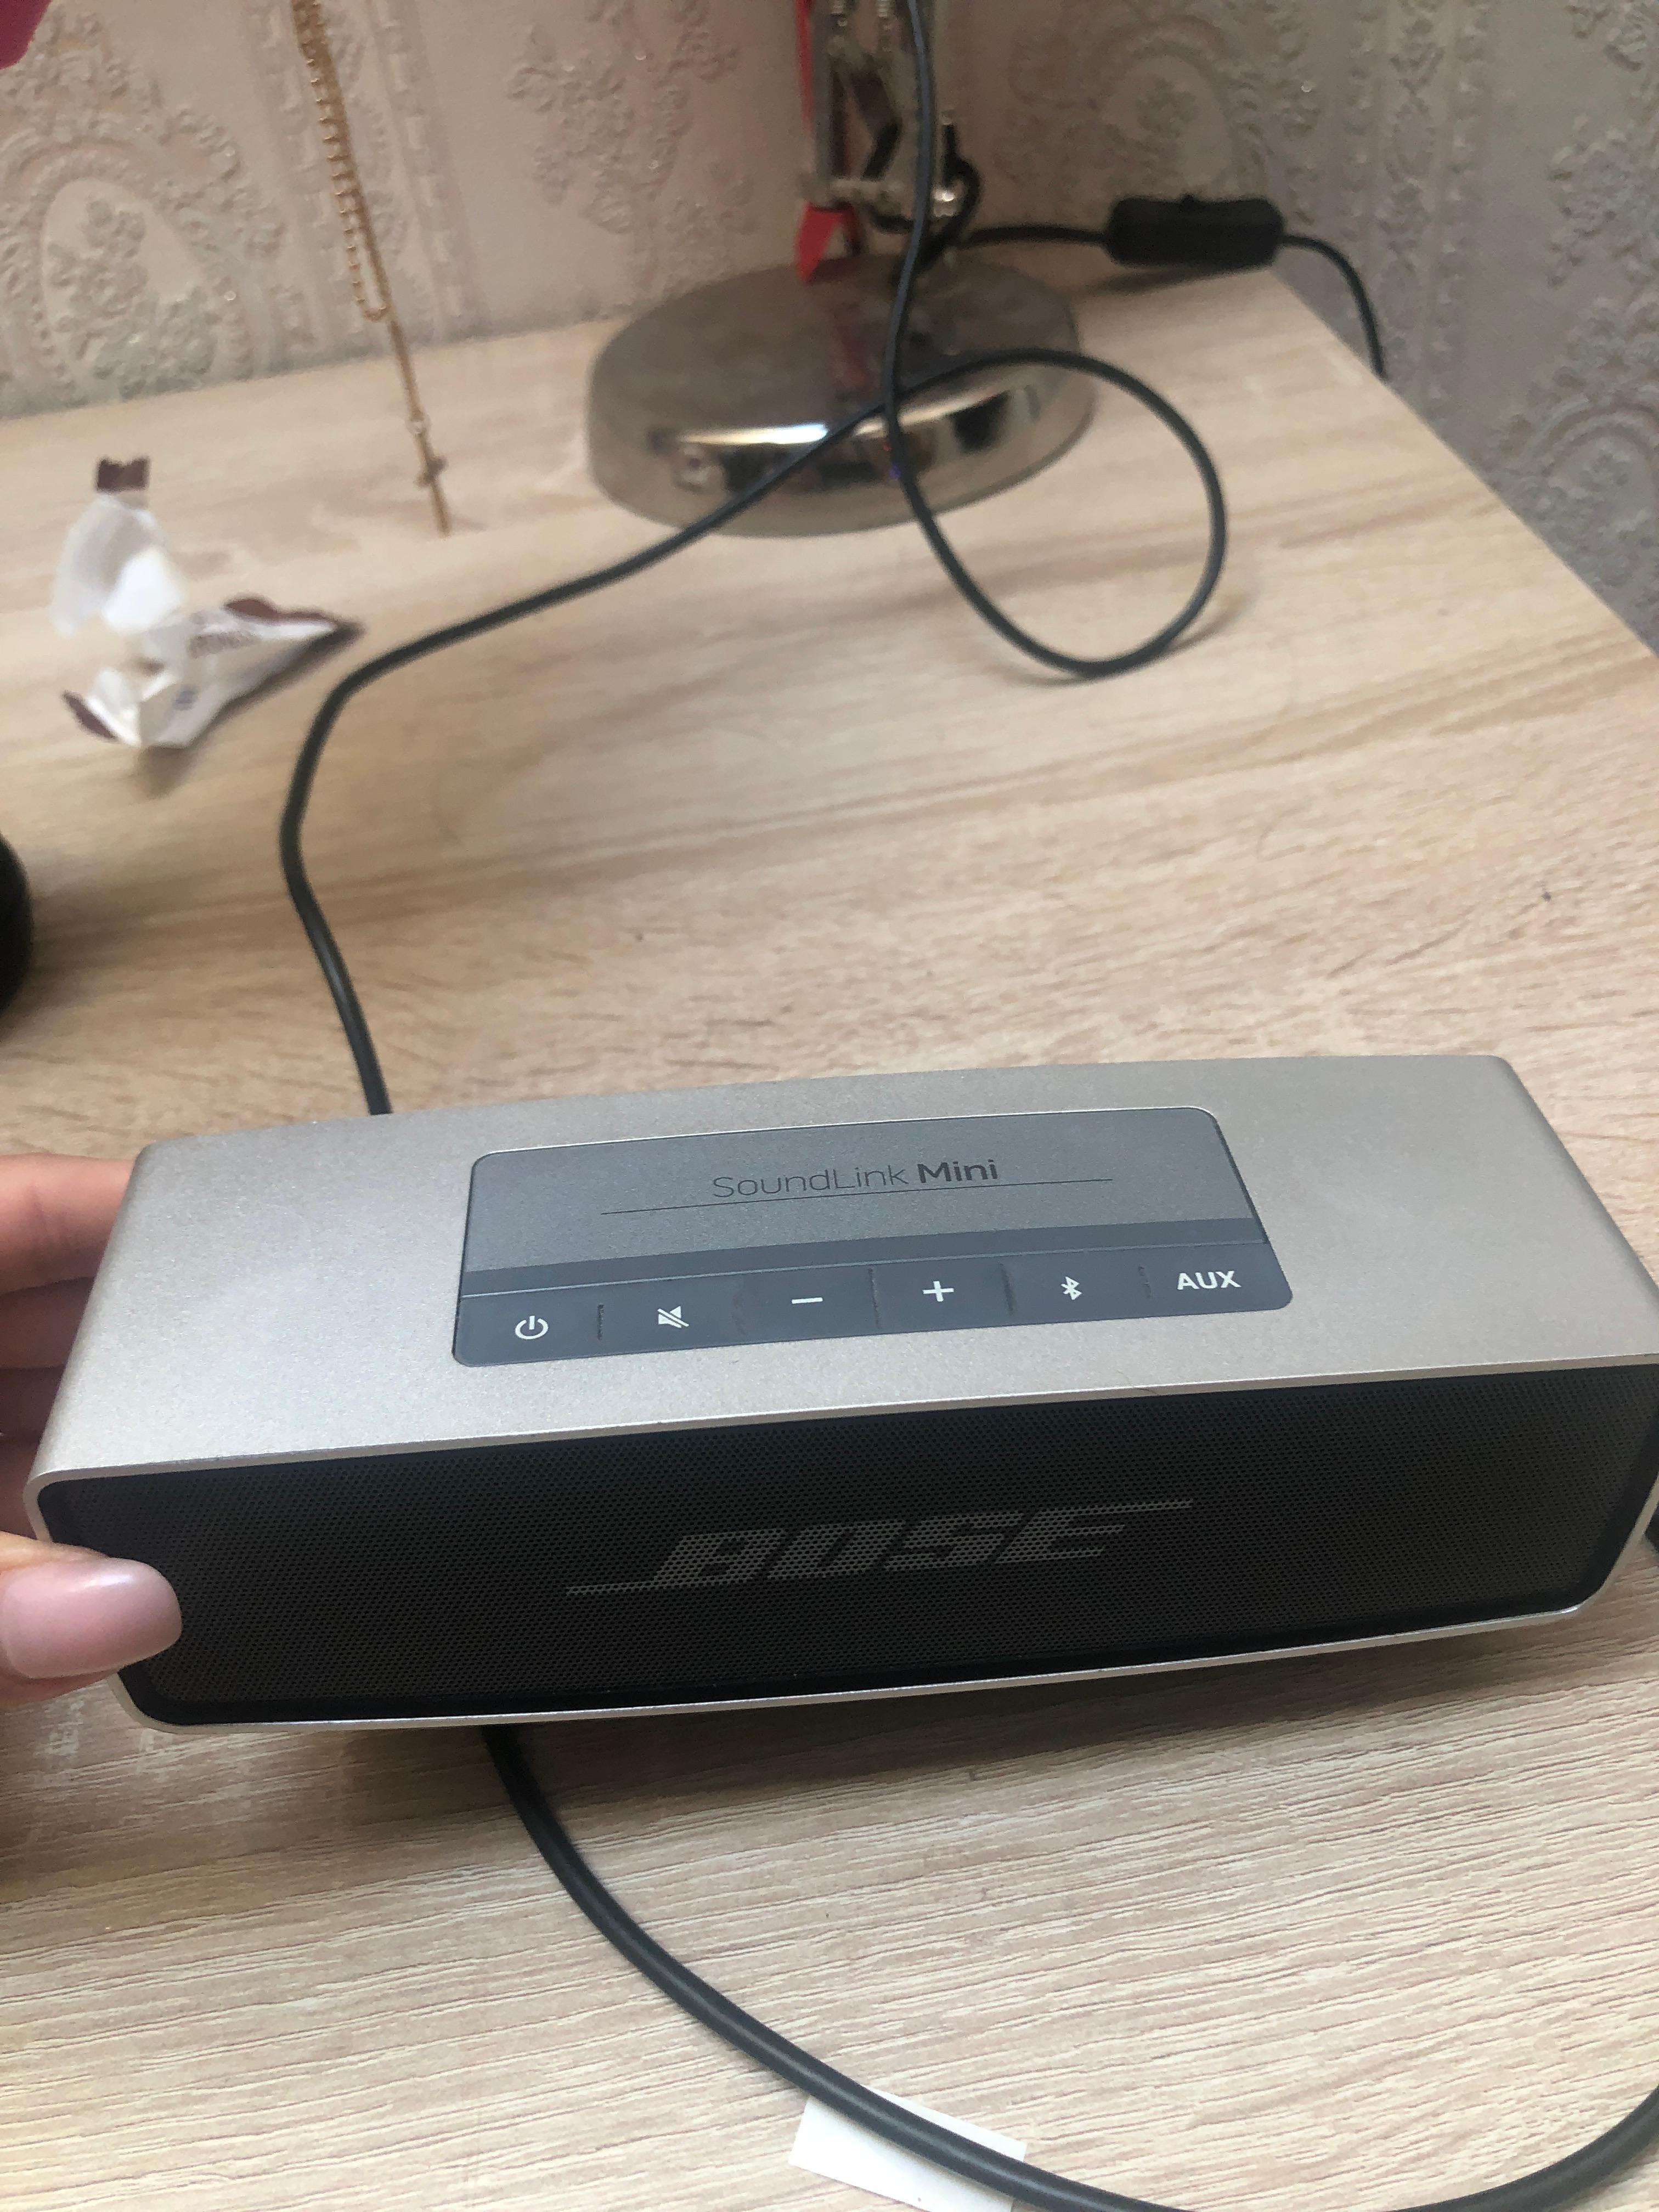 Bose Mini Musikbox geht nicht mehr an? (Musik, Akku